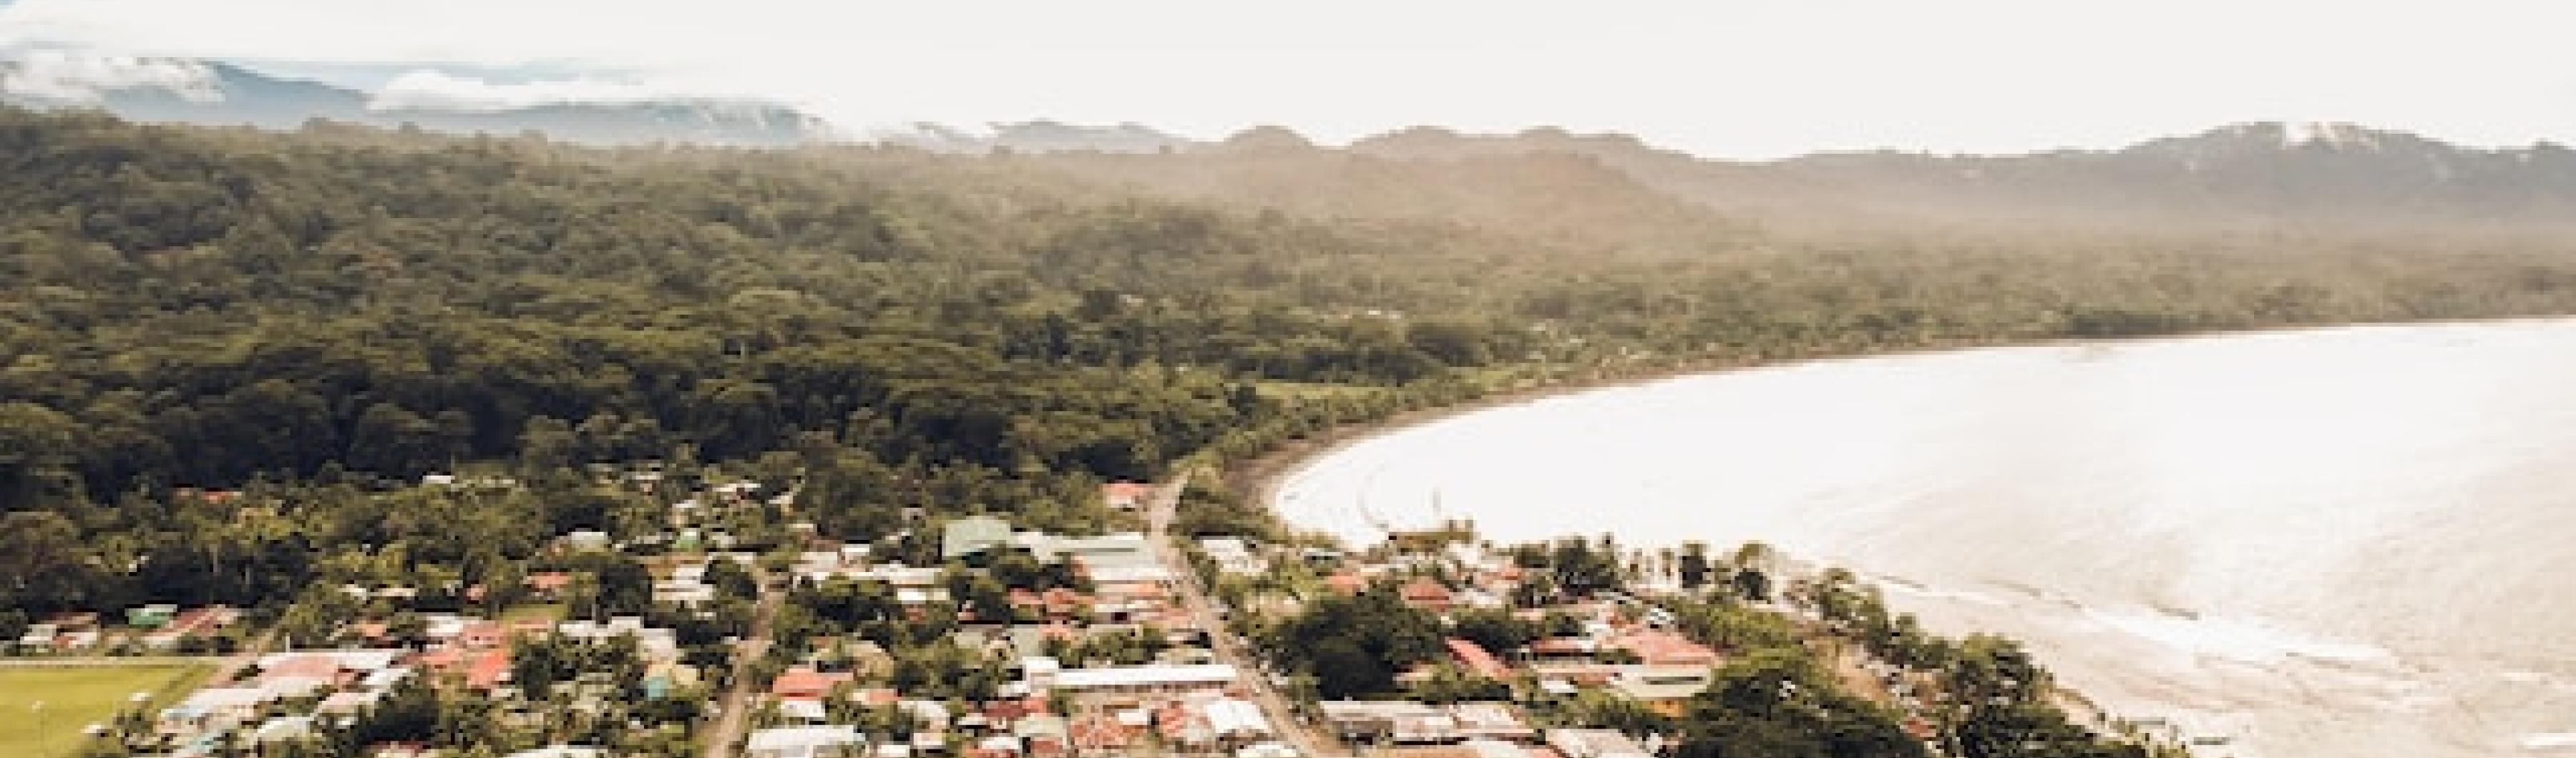 Vista de uma cidade litorânea na Costa Rica